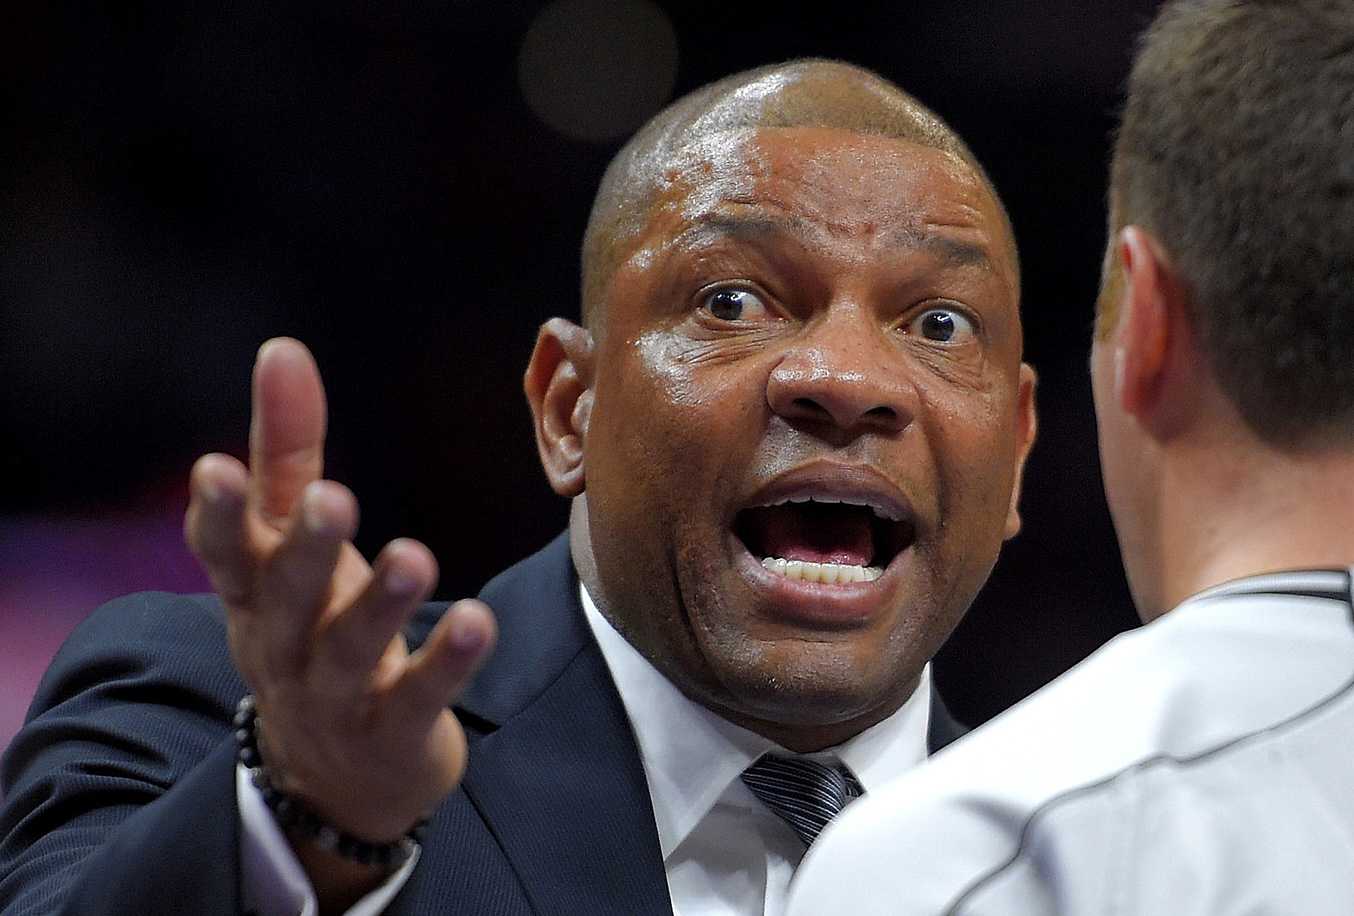 "Si nous jouons comme ça, nous ne pouvons pas gagner": l'entraîneur de LA Clippers déçu par la lenteur de la réponse de l'équipe contre les non-conformistes